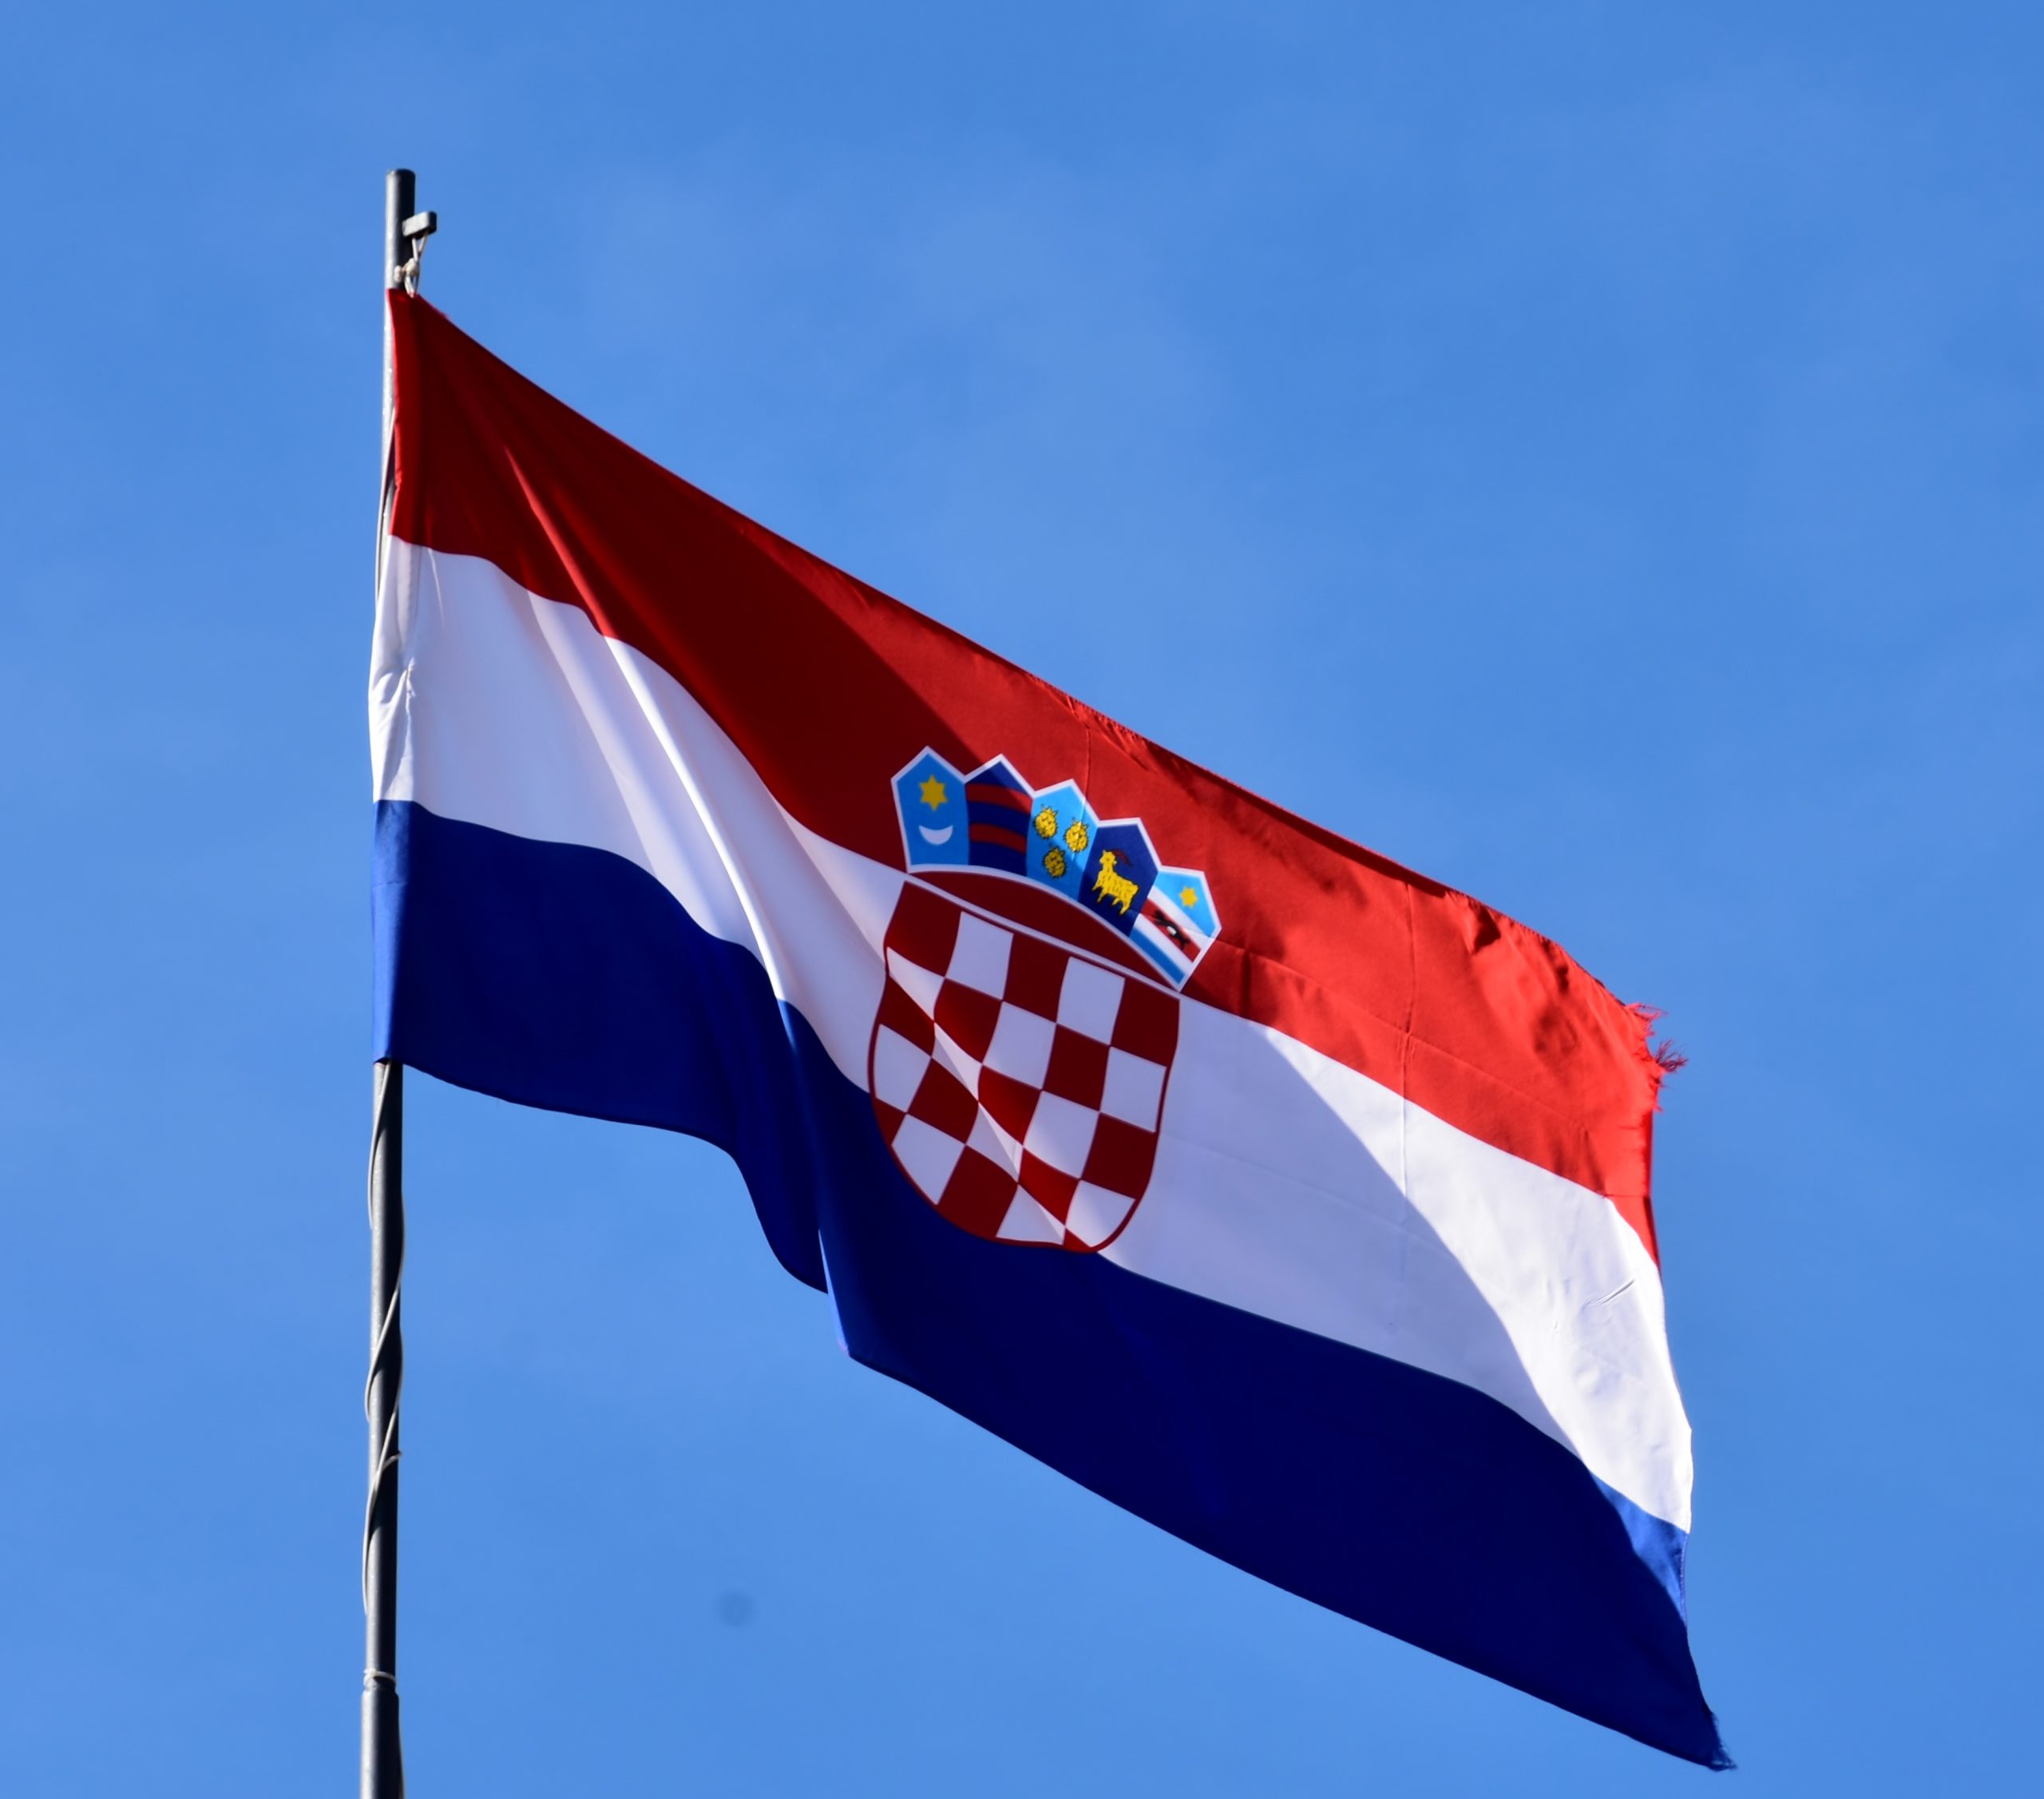 Croatia Joins The Eurozone And Schengen Area